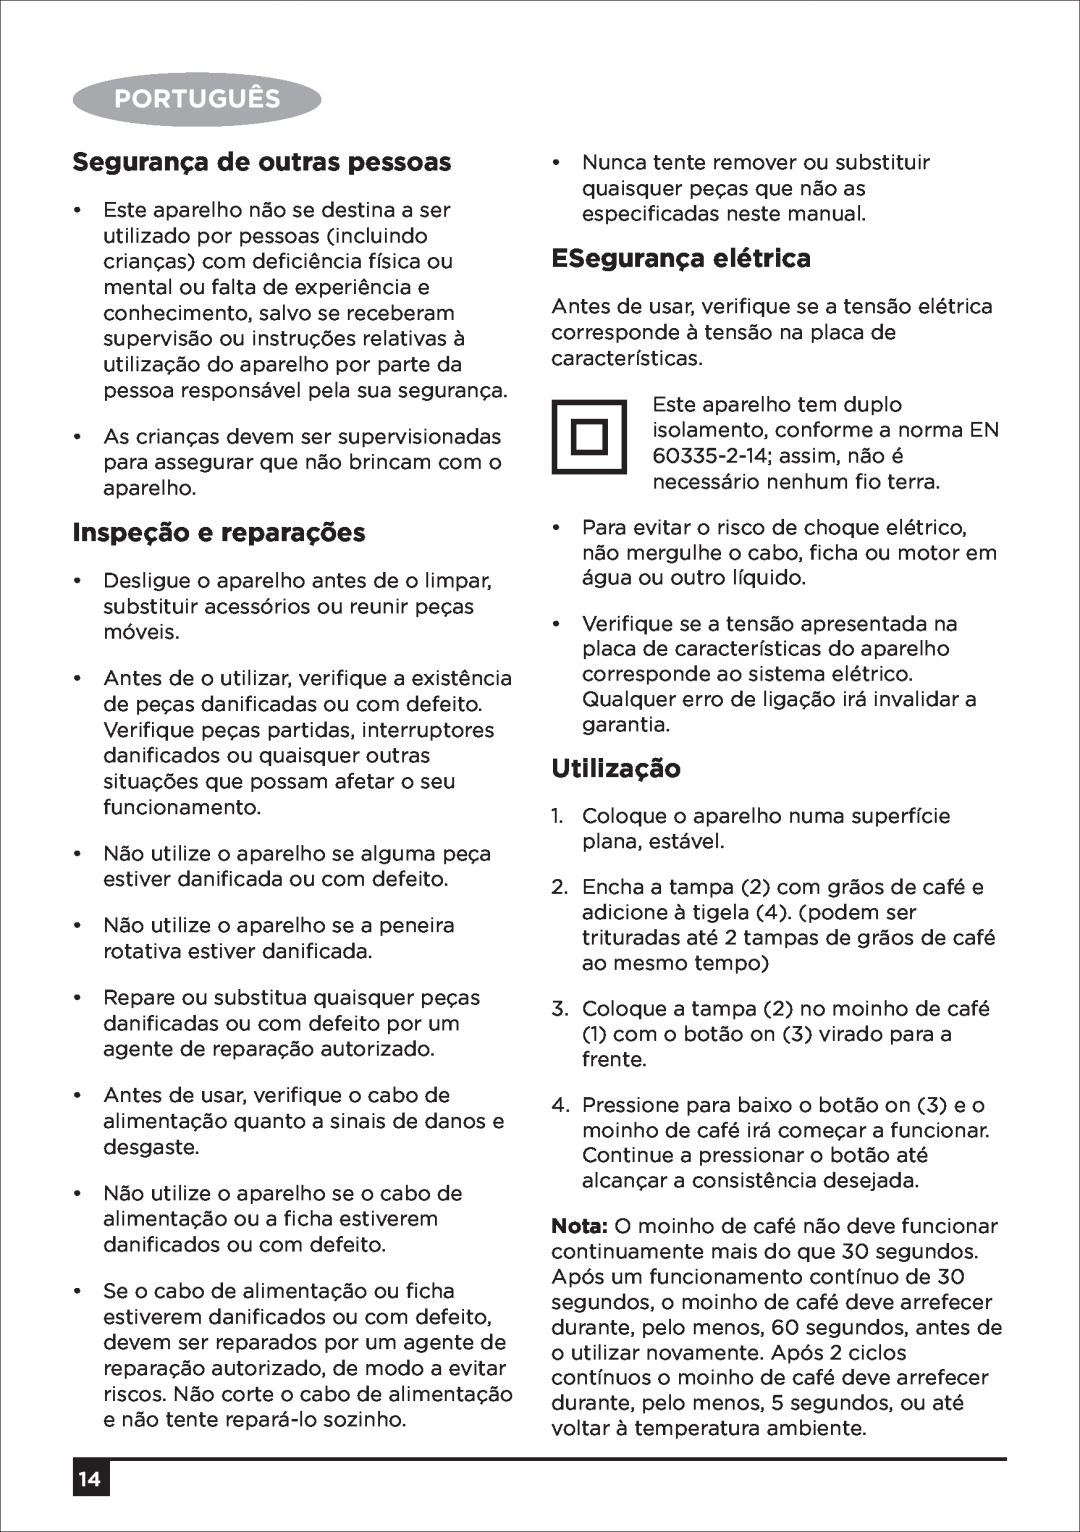 Black & Decker CBM4 manual Português, Segurança de outras pessoas, Inspeção e reparações, ESegurança elétrica, Utilização 